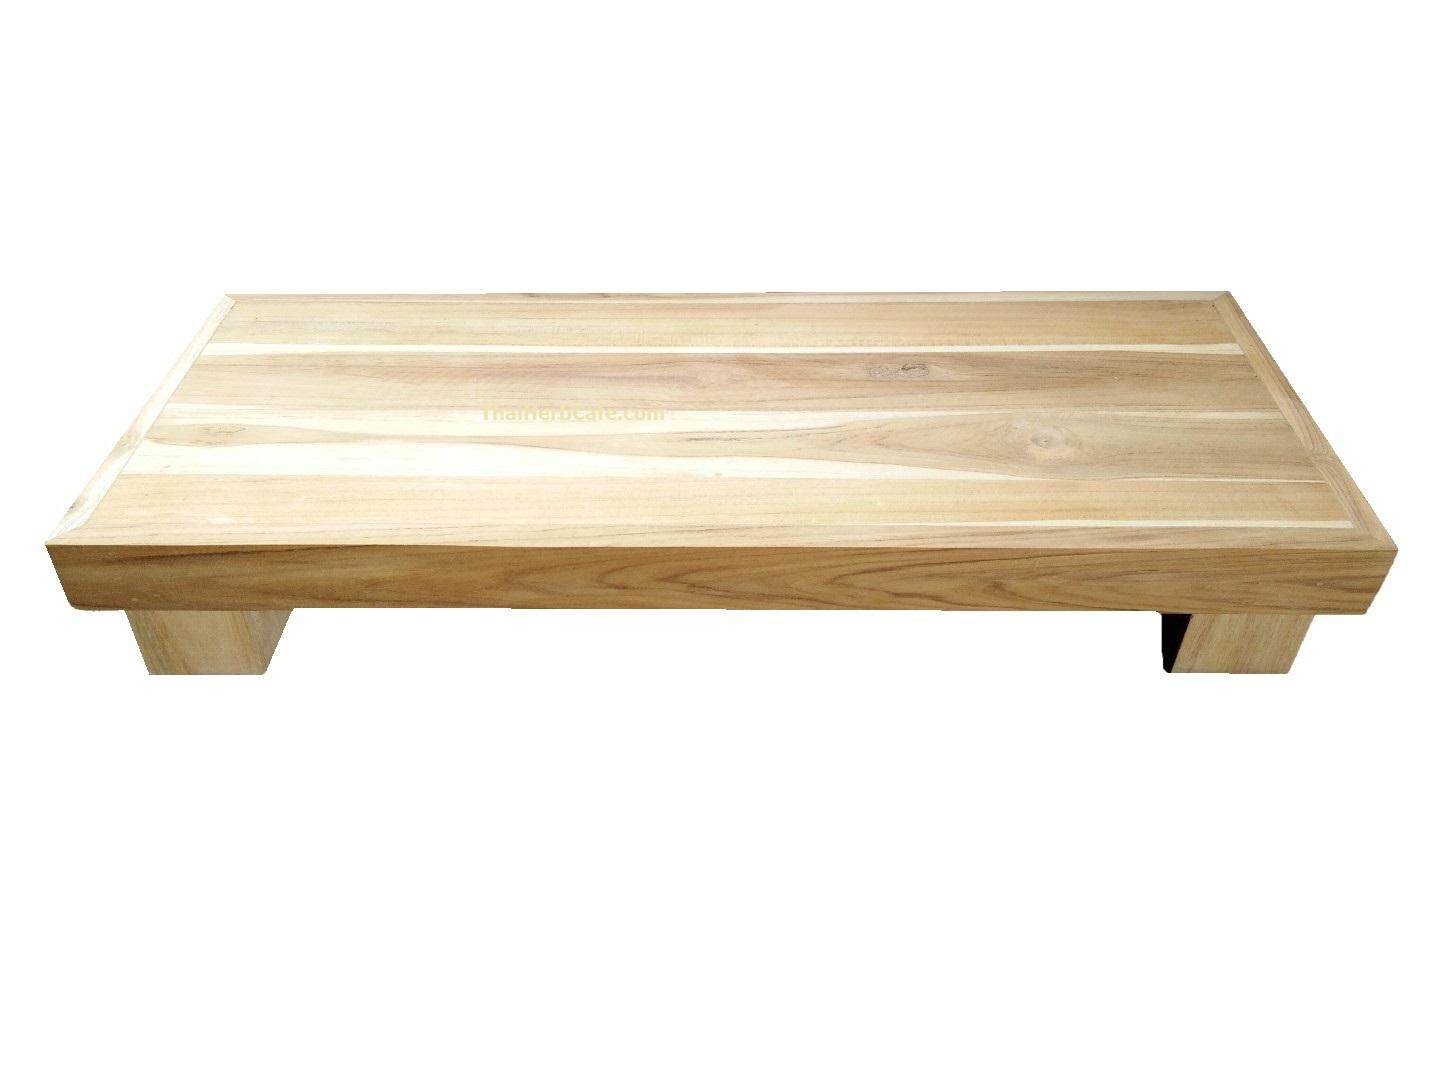 โต๊ะเตี๊ยสไตล์ญี่ปุ่น 50x20cm. สูง 8cm. Japanese table chopping board โต๊ะวางอาหาร ถาดไม้สไตล์ญี่ปุ่นดั่งเดิม ฐานพระ เขียง จานไม้ ถาดรองหม้อชาบู ถาดไม้